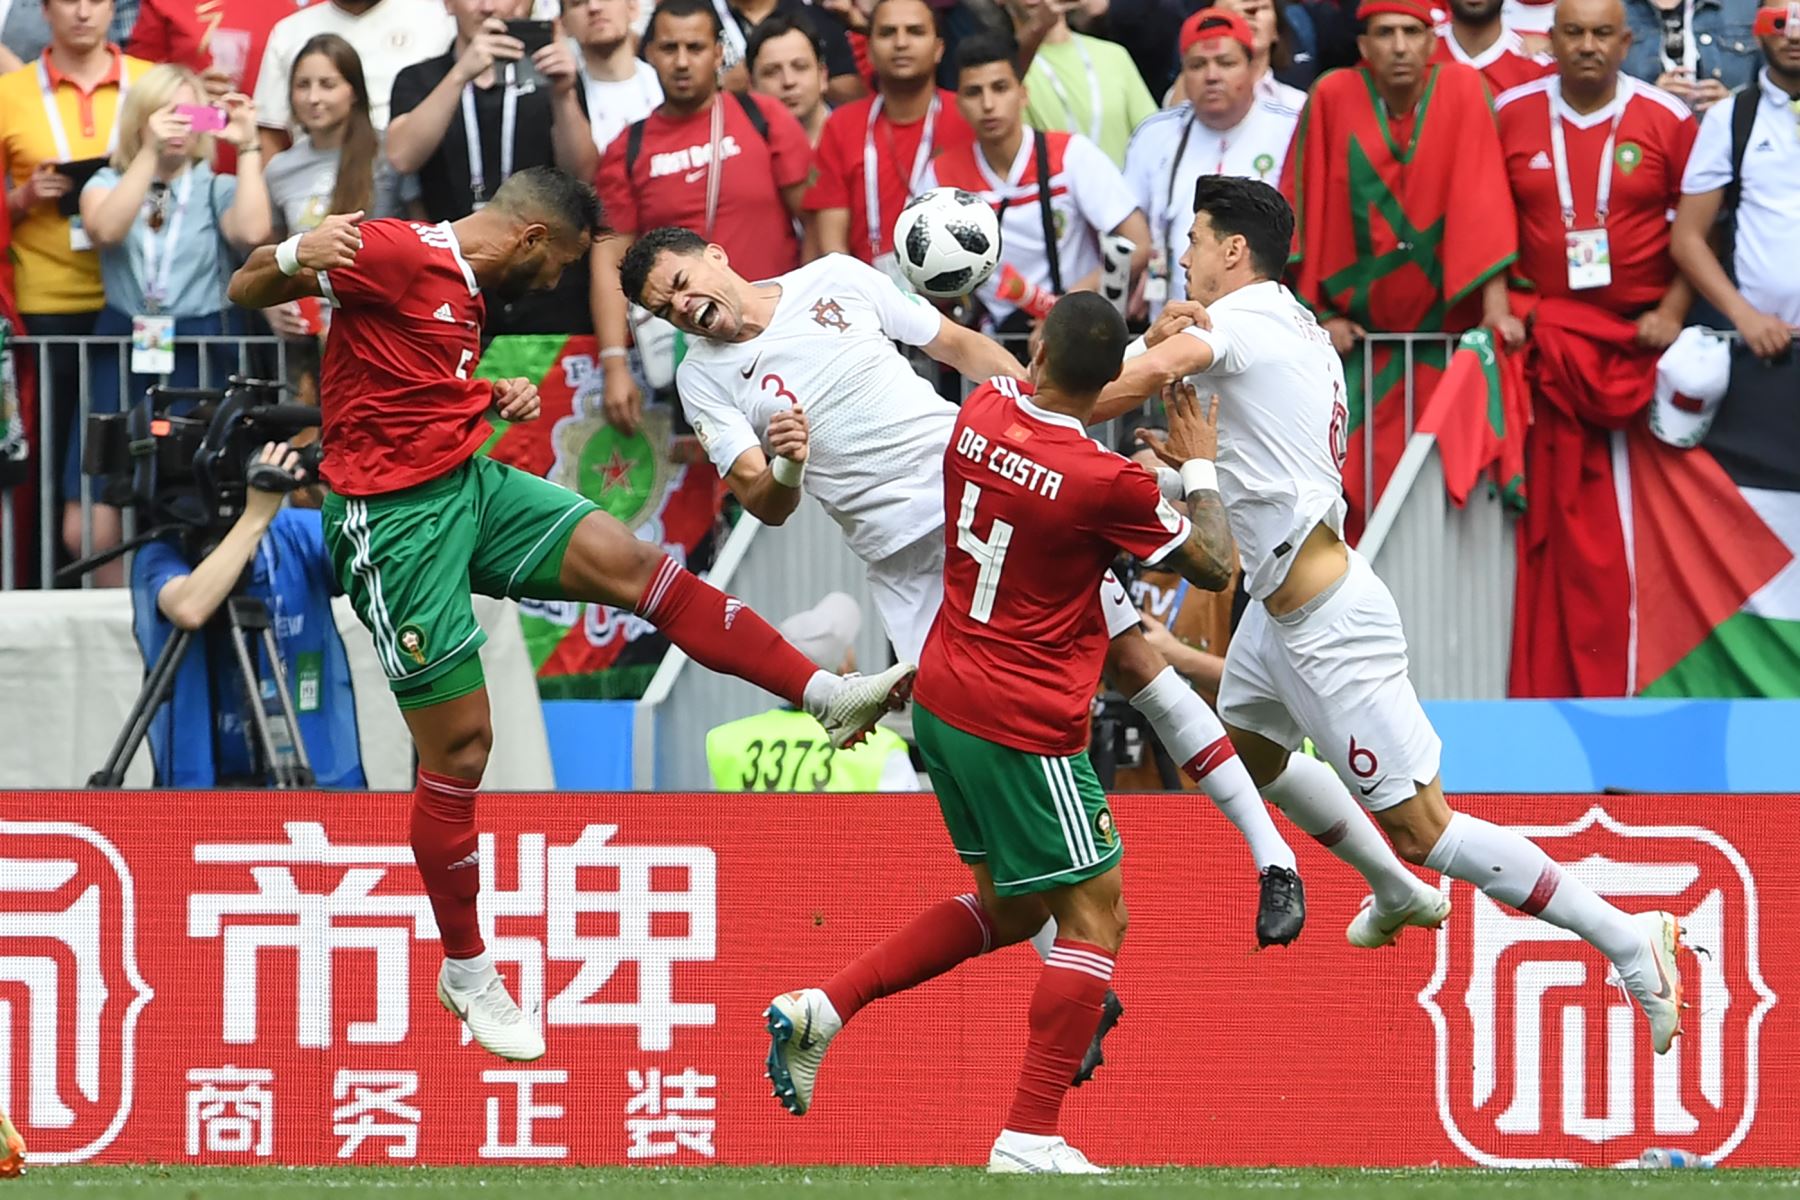 El defensor de Marruecos Mehdi Benatia (L) encabeza la pelota durante el partido de fútbol del Grupo B Rusia 2018 entre Portugal y Marruecos en el Estadio Luzhniki en Moscú el 20 de junio de 2018. / AFP